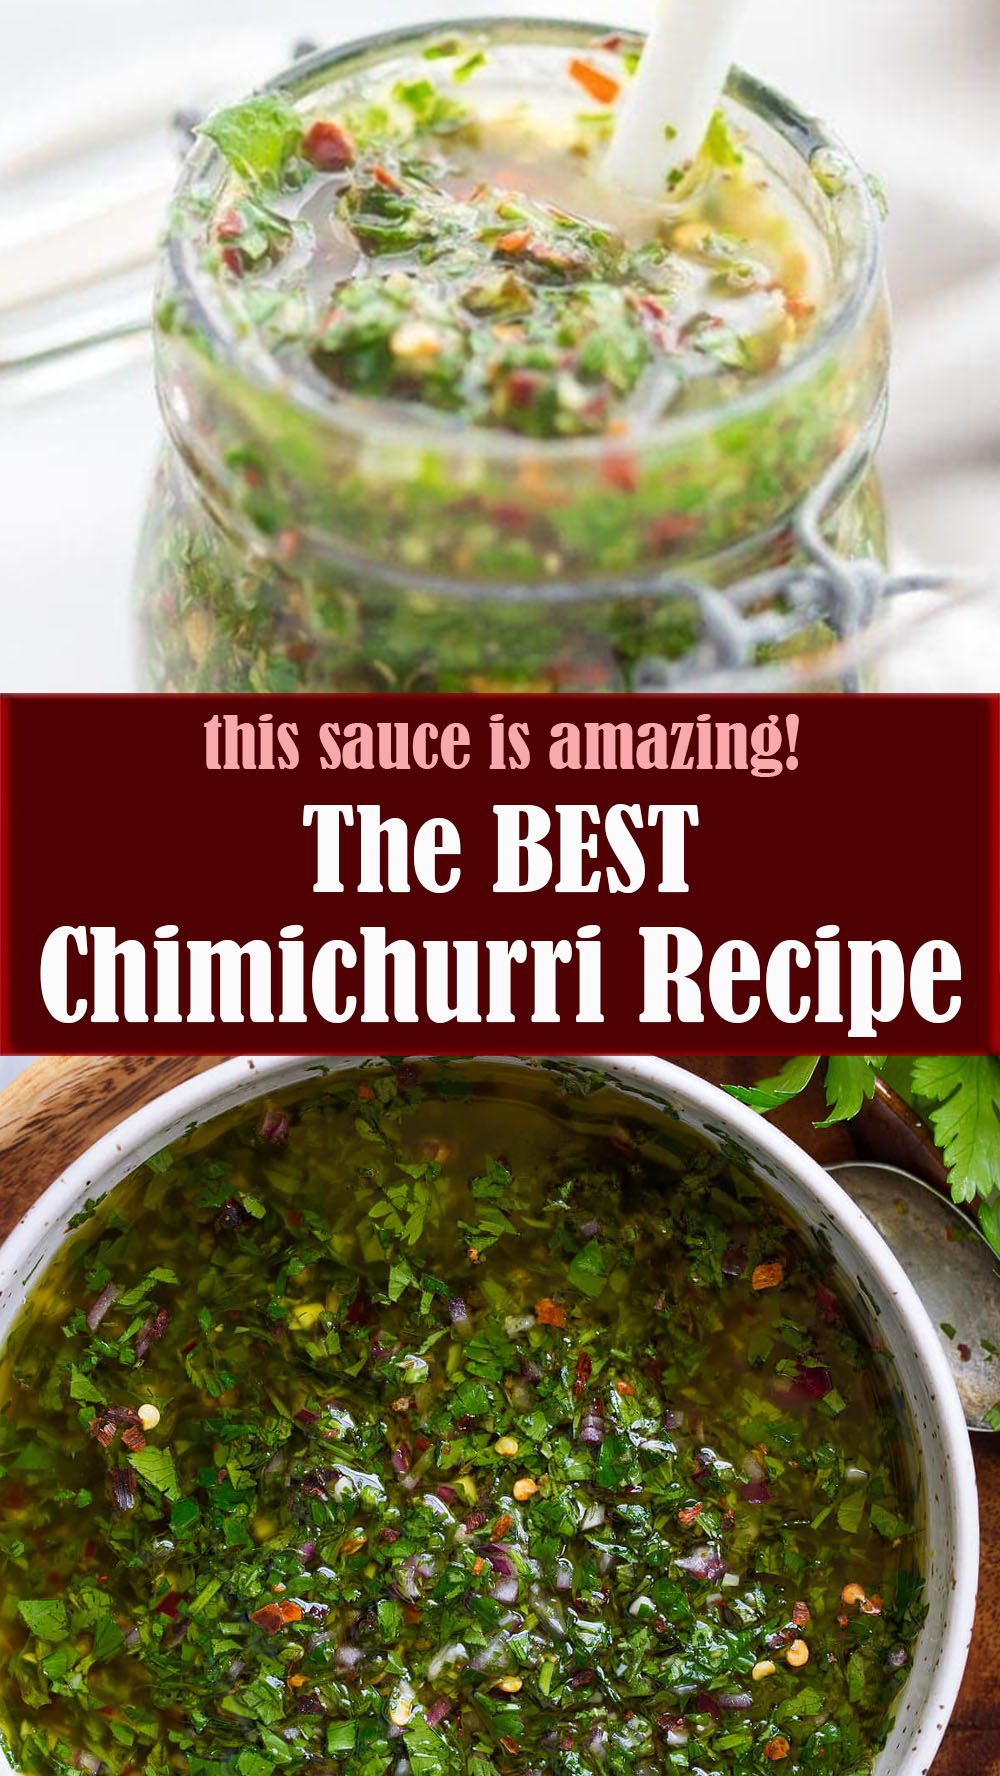 The Best Chimichurri Recipe